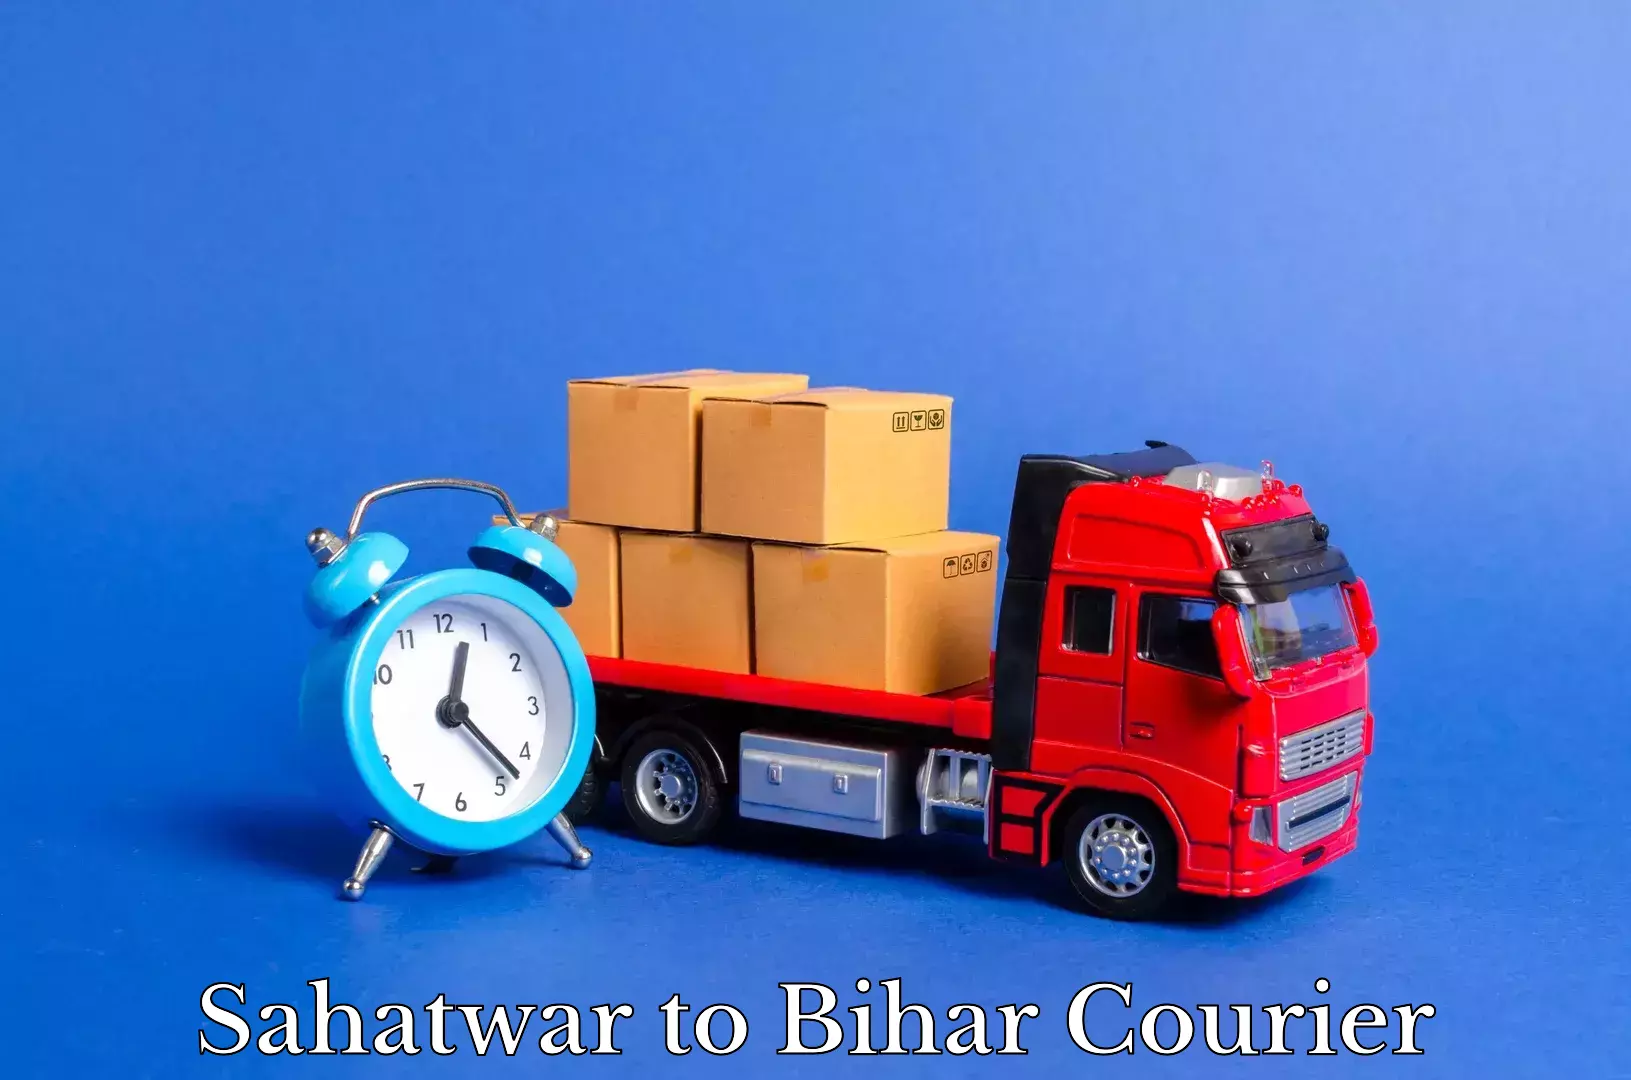 Furniture moving plans Sahatwar to Brahmapur